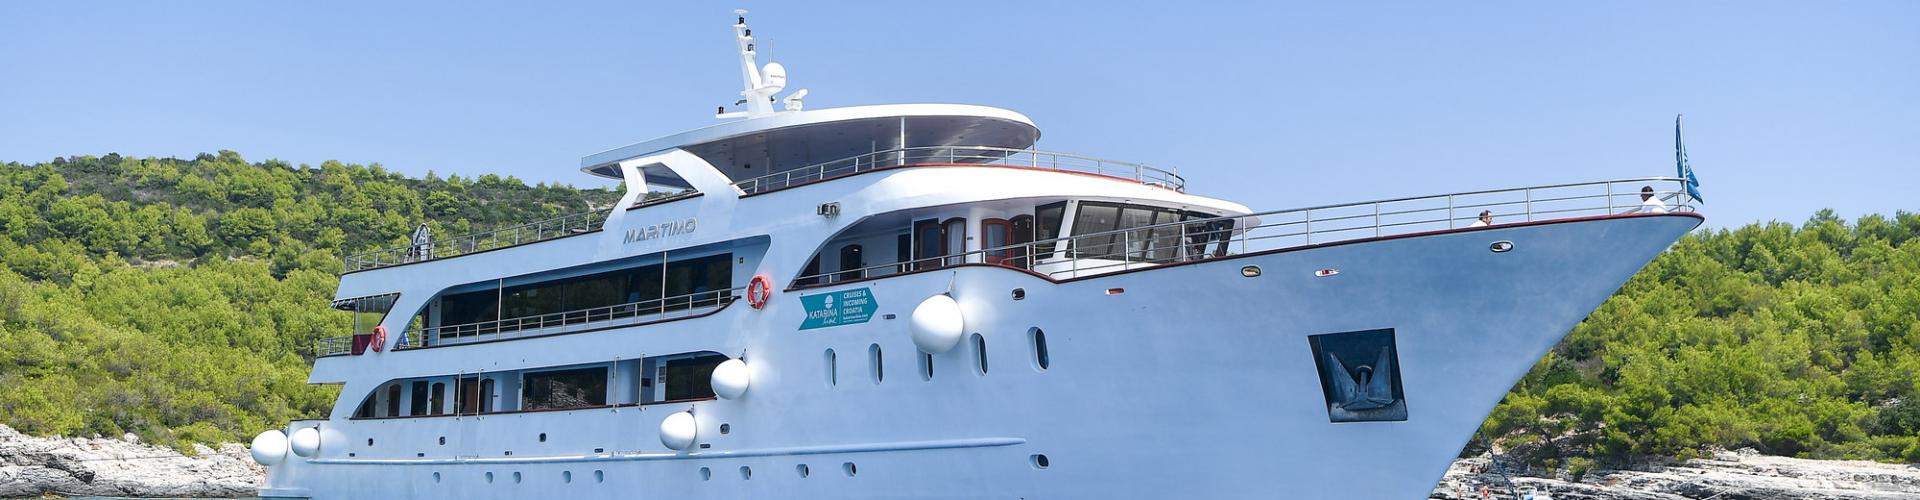 Deluxe navire de croisière MV Maritimo- yacht à moteur